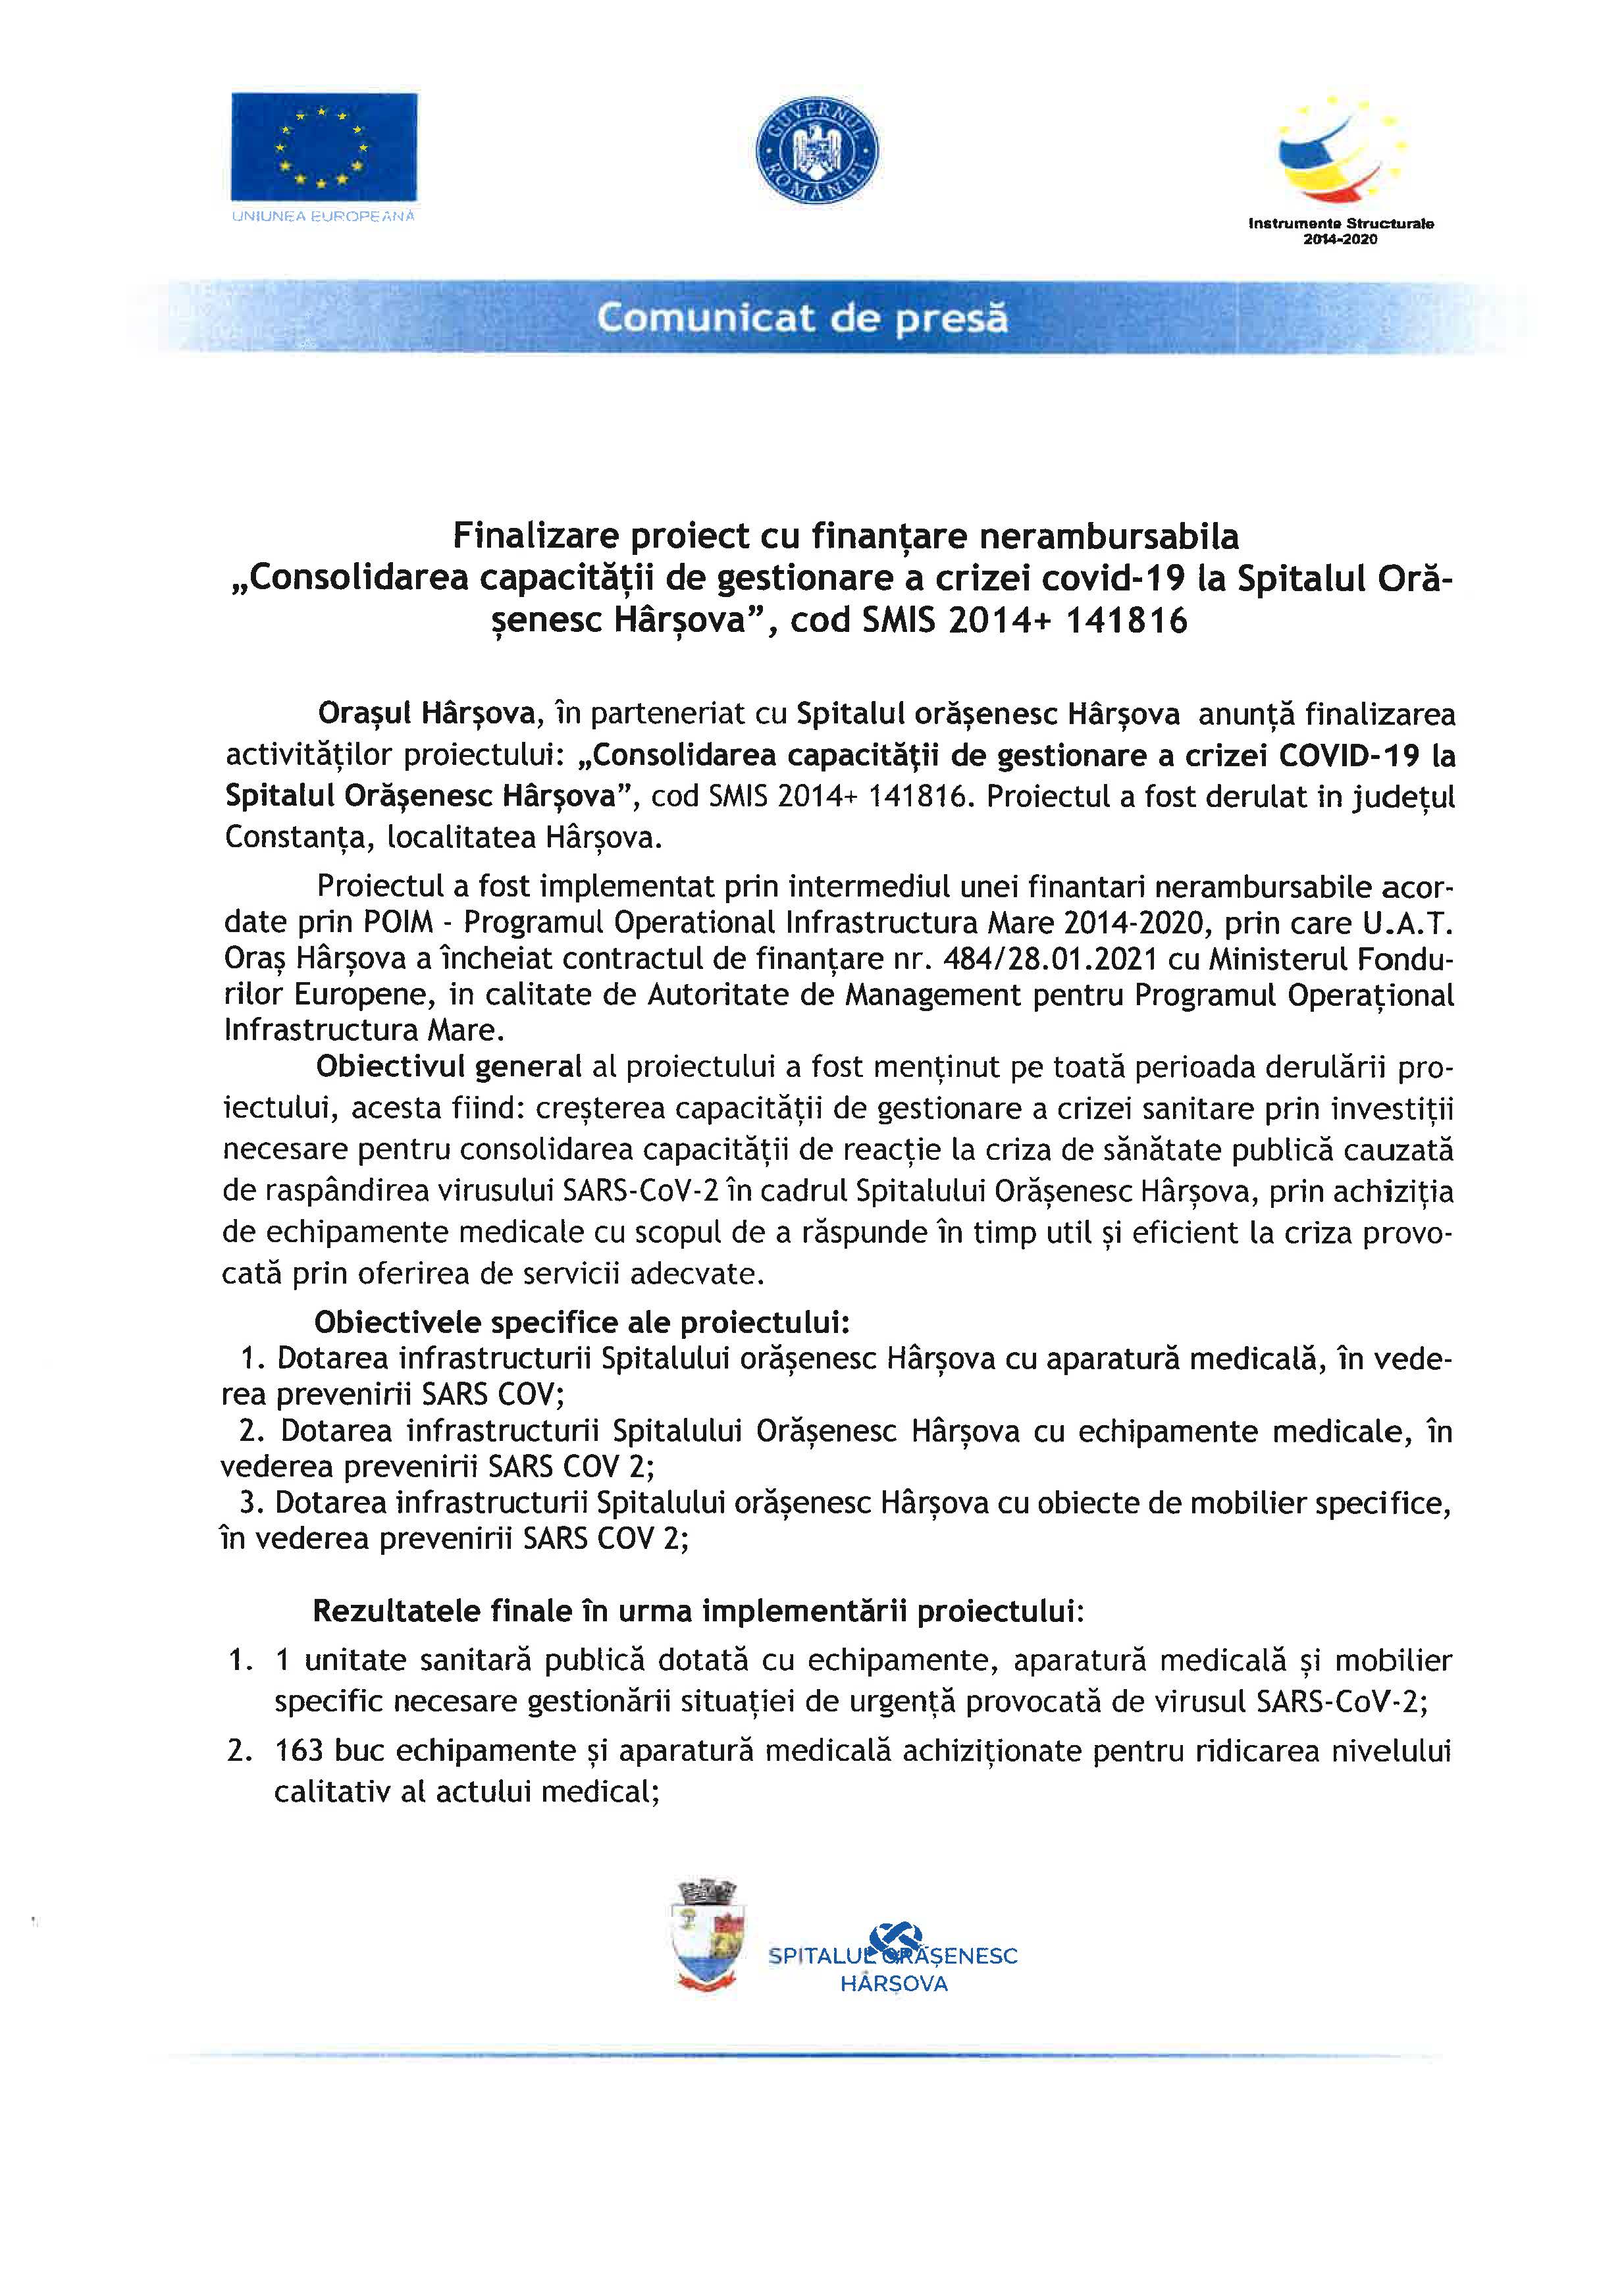 Finalizare proiect cu finanțare nerambursabilă ``Consolidarea capacității de gestionare a crizei covid-19 la Spitalul Orășenesc Hârșova``, cod SMIS 2014 + 141816